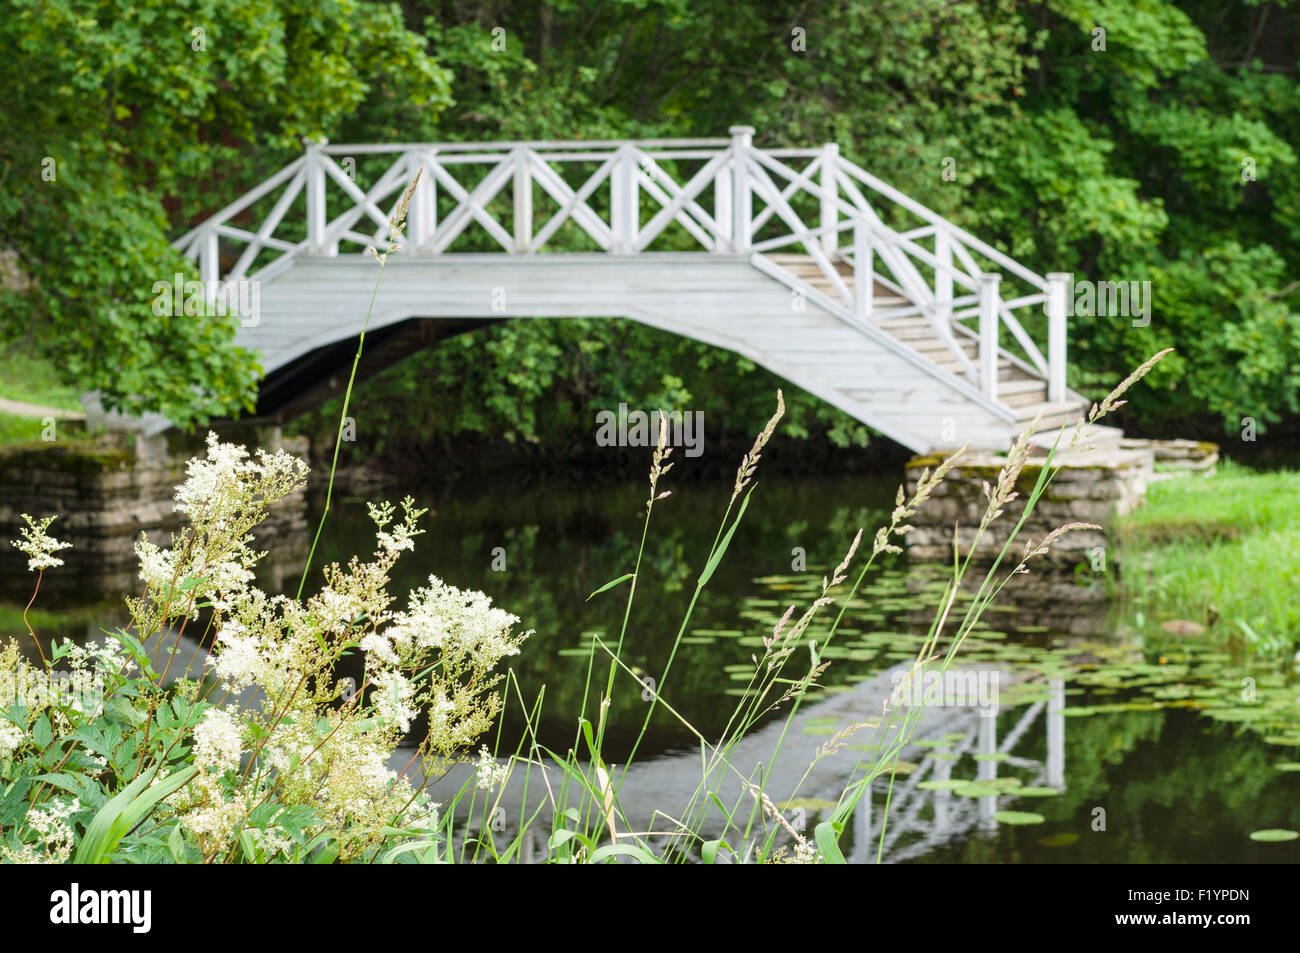 Defocused image of decorative white wooden bridge in park Stock Photo